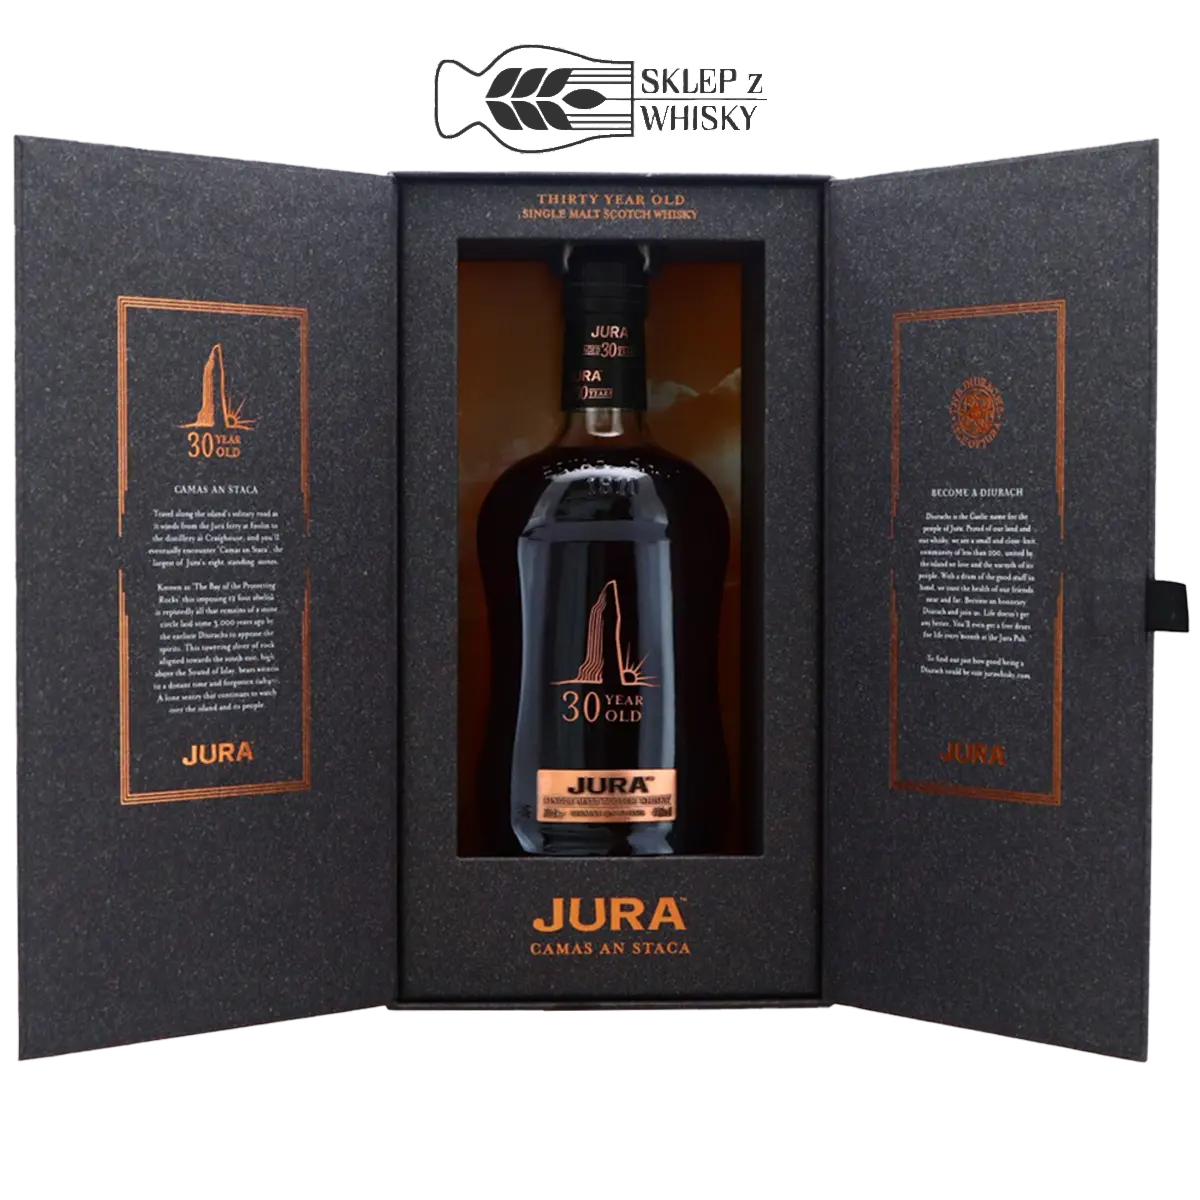 Jura 30 YO Camas An Staca - szkocka whisky single malt z wyspy Jura, 700 ml, w otwartym pudełku